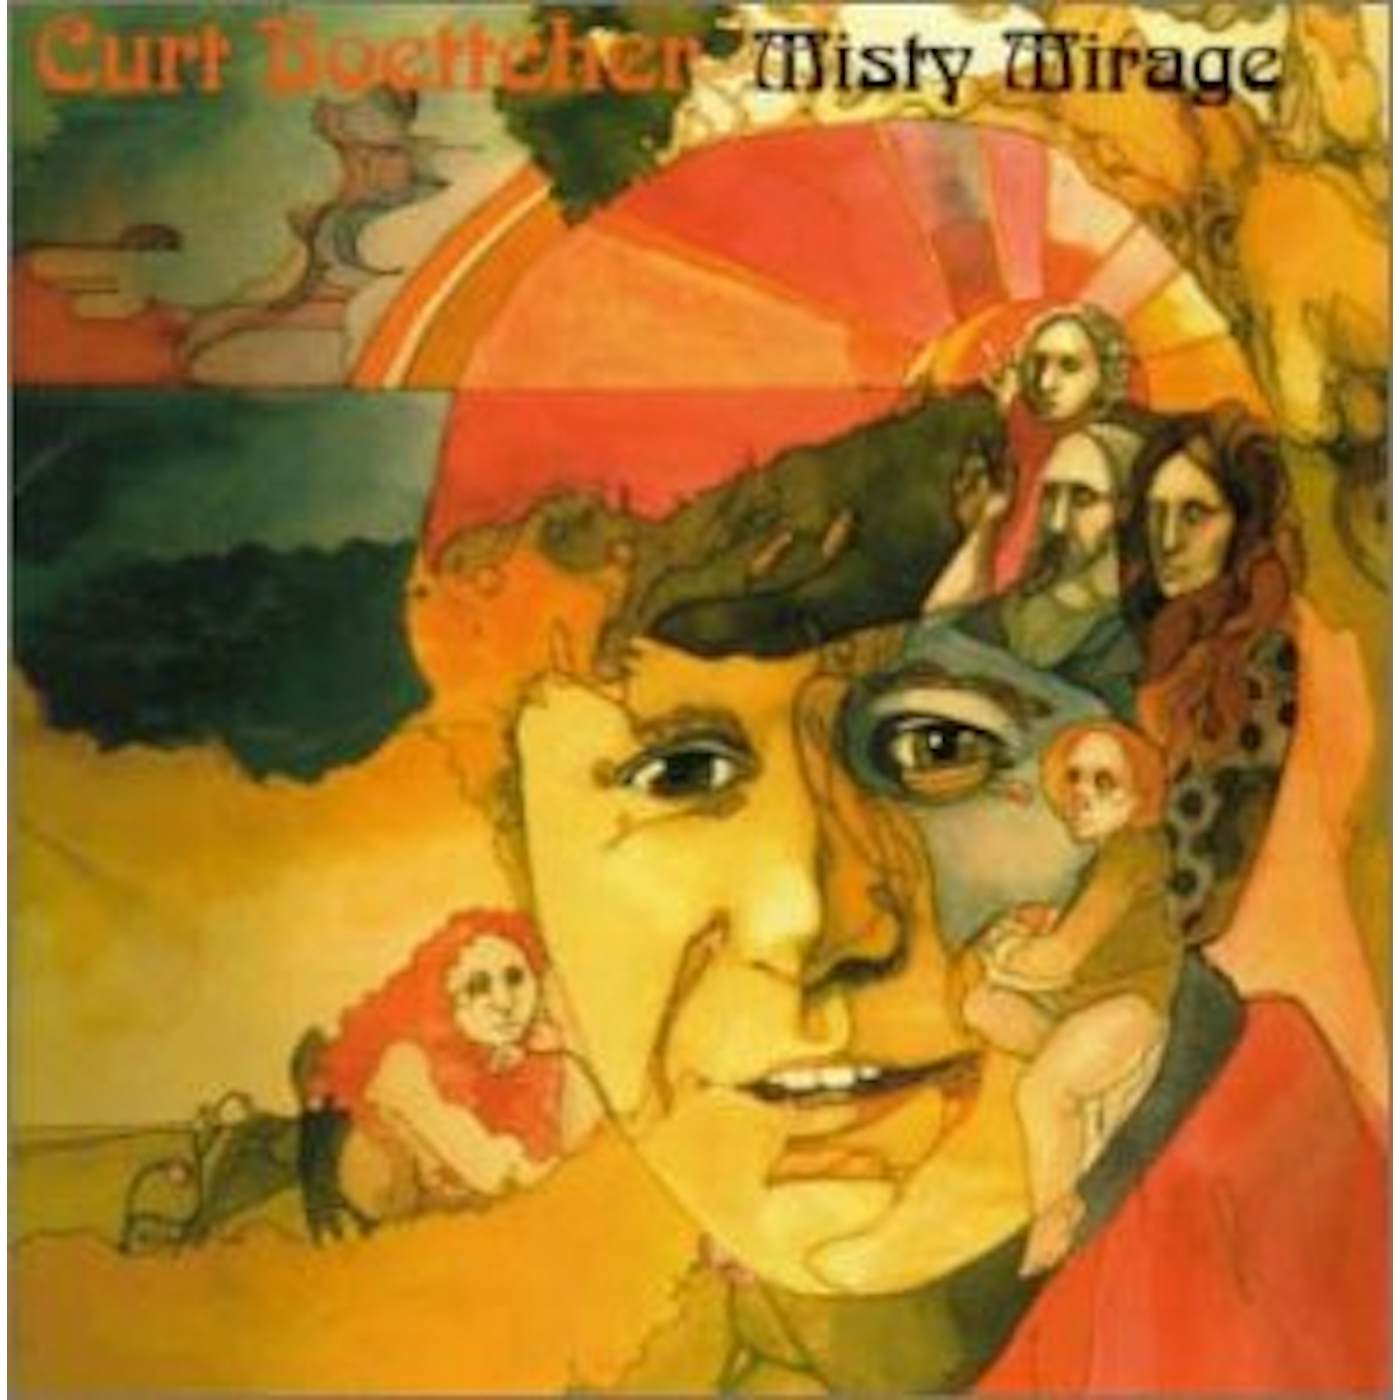 Curt Boettcher MISTY MIRAGE CD